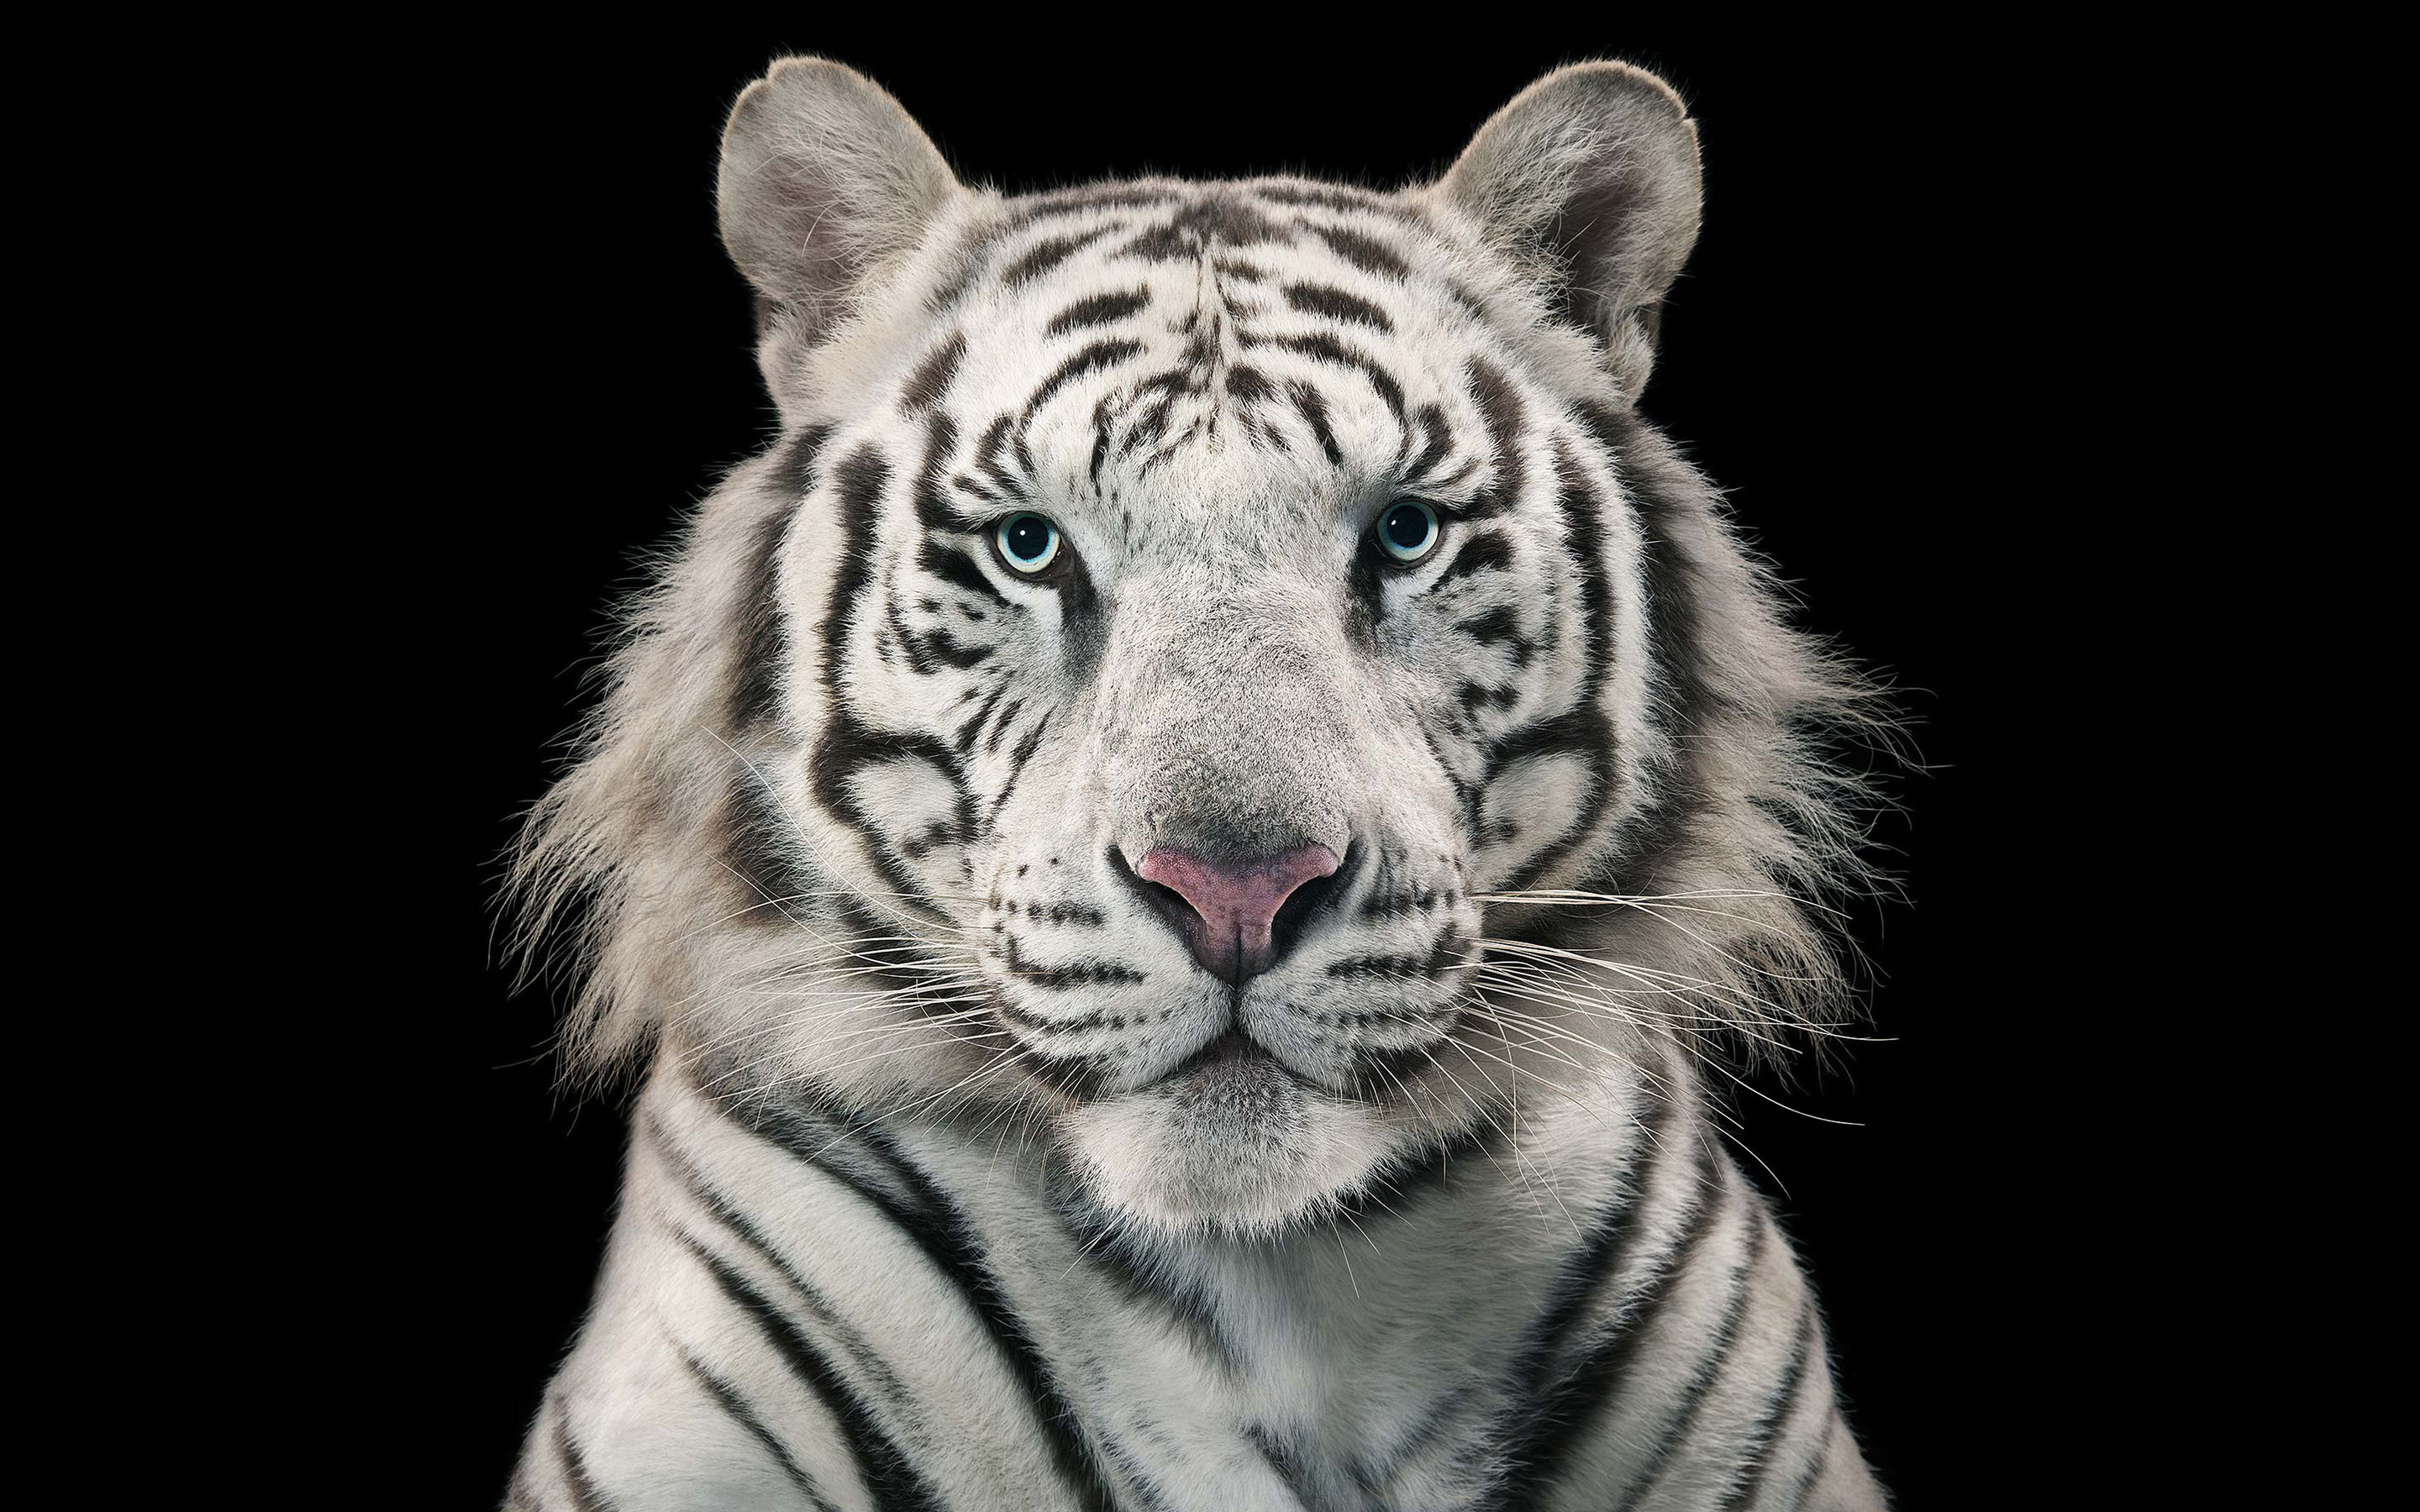 White Tiger Bengal Tiger7954312702 - White Tiger Bengal Tiger - white, Tiger, Bengal